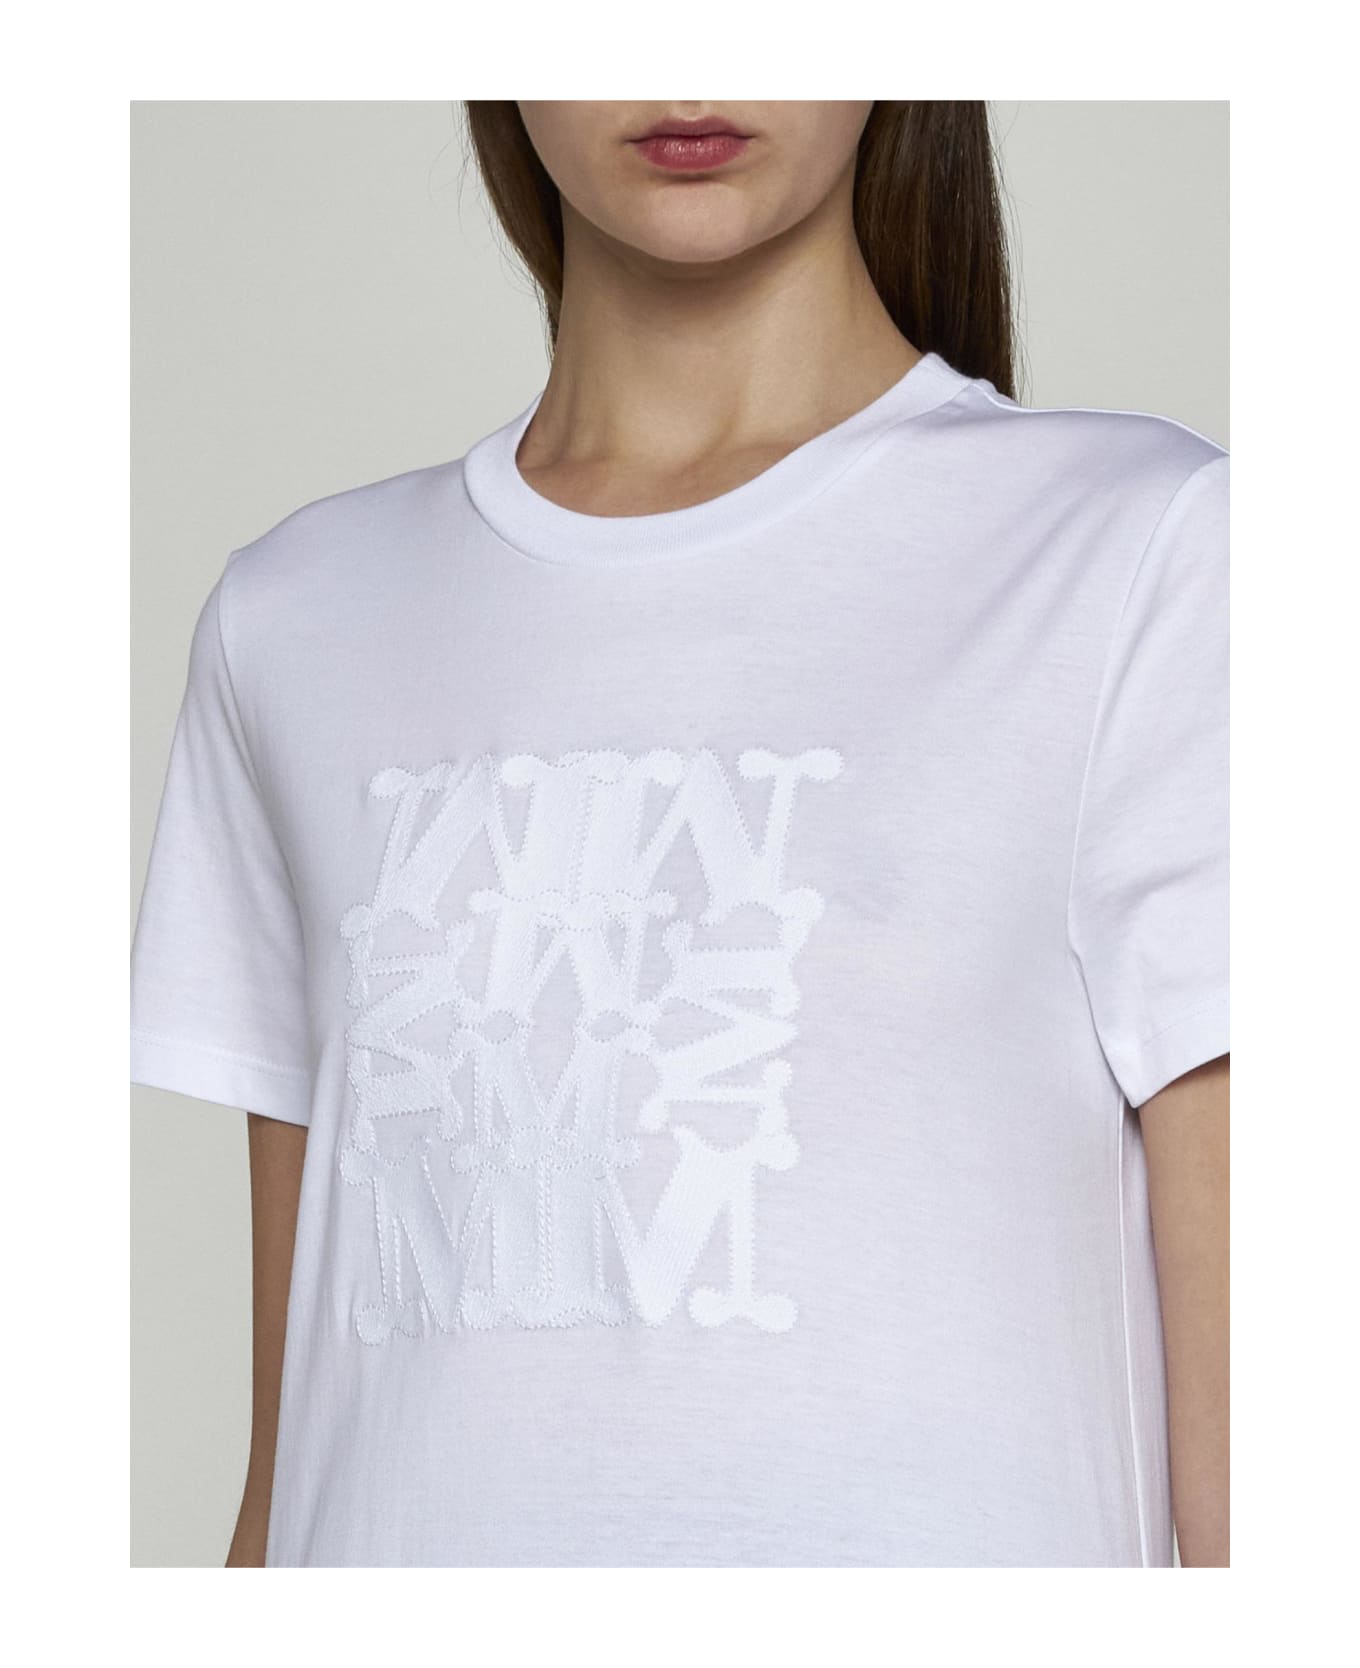 Max Mara Taverna Logo Cotton T-shirt - WHITE Tシャツ